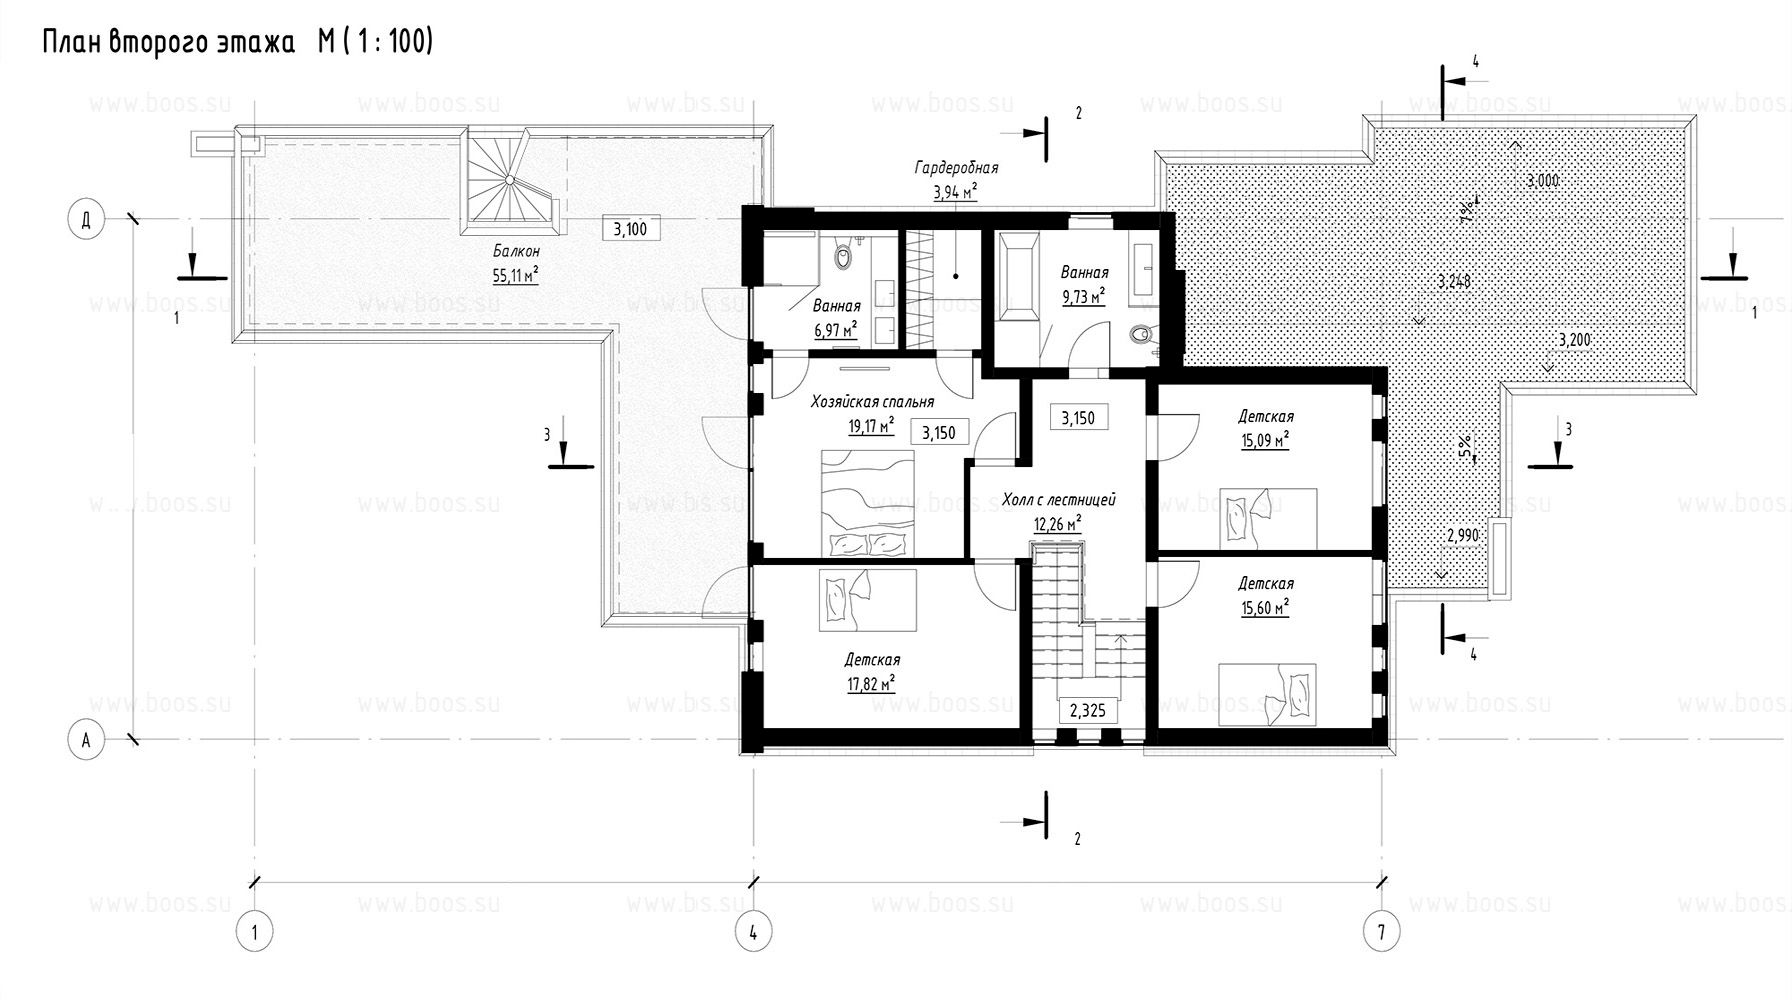 Марино хаус / Marino house BOOS architects план